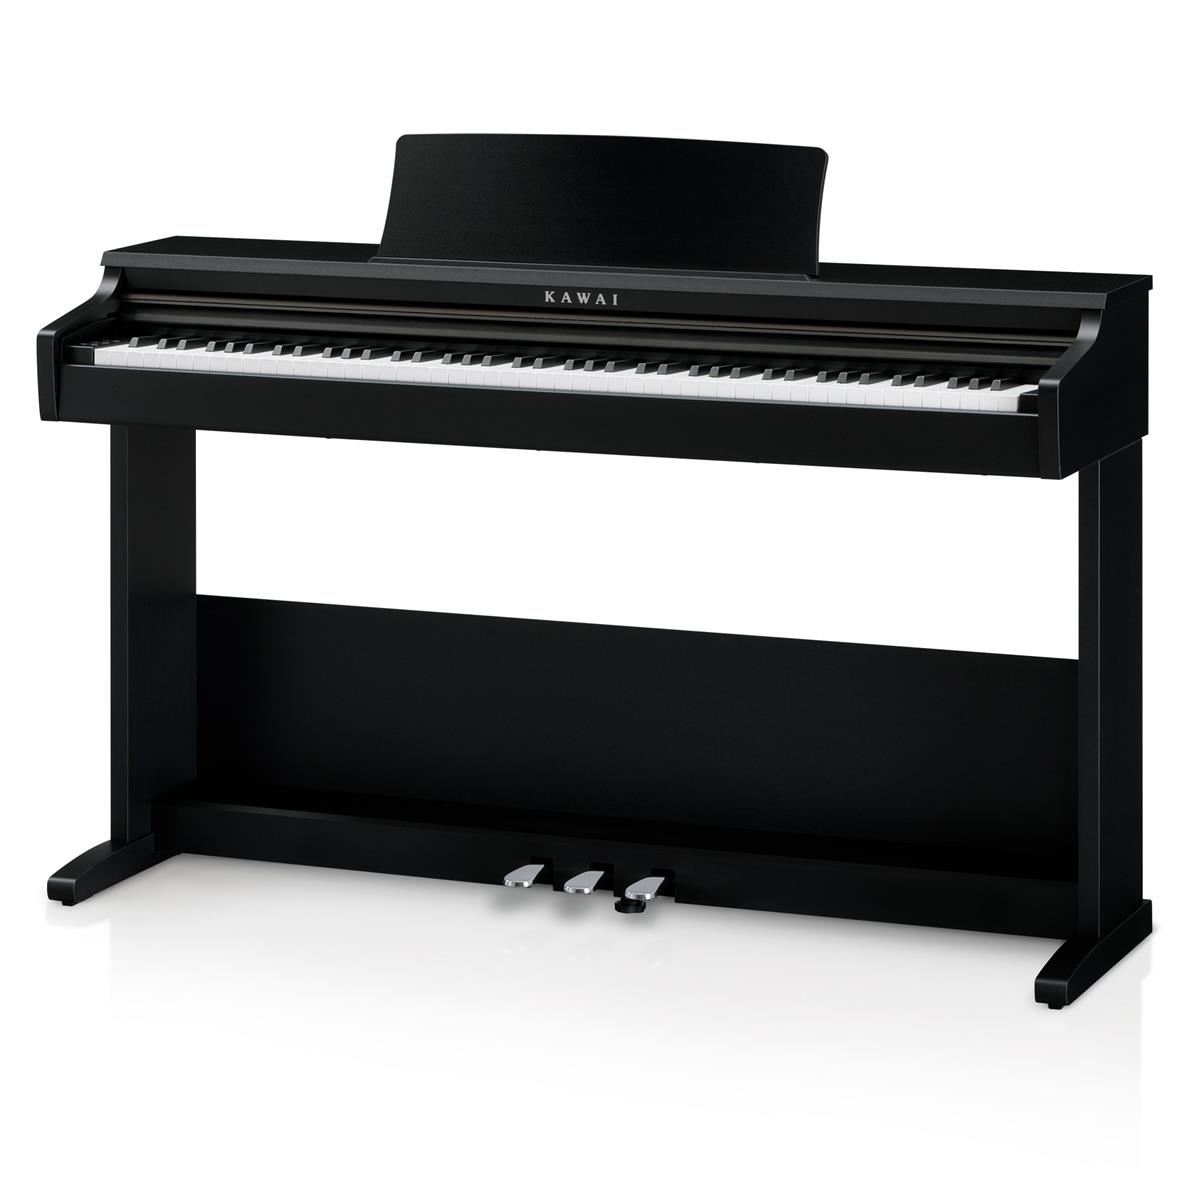 Kawai KDP75 88-Key Digital Piano with Bench $699 + free s/h